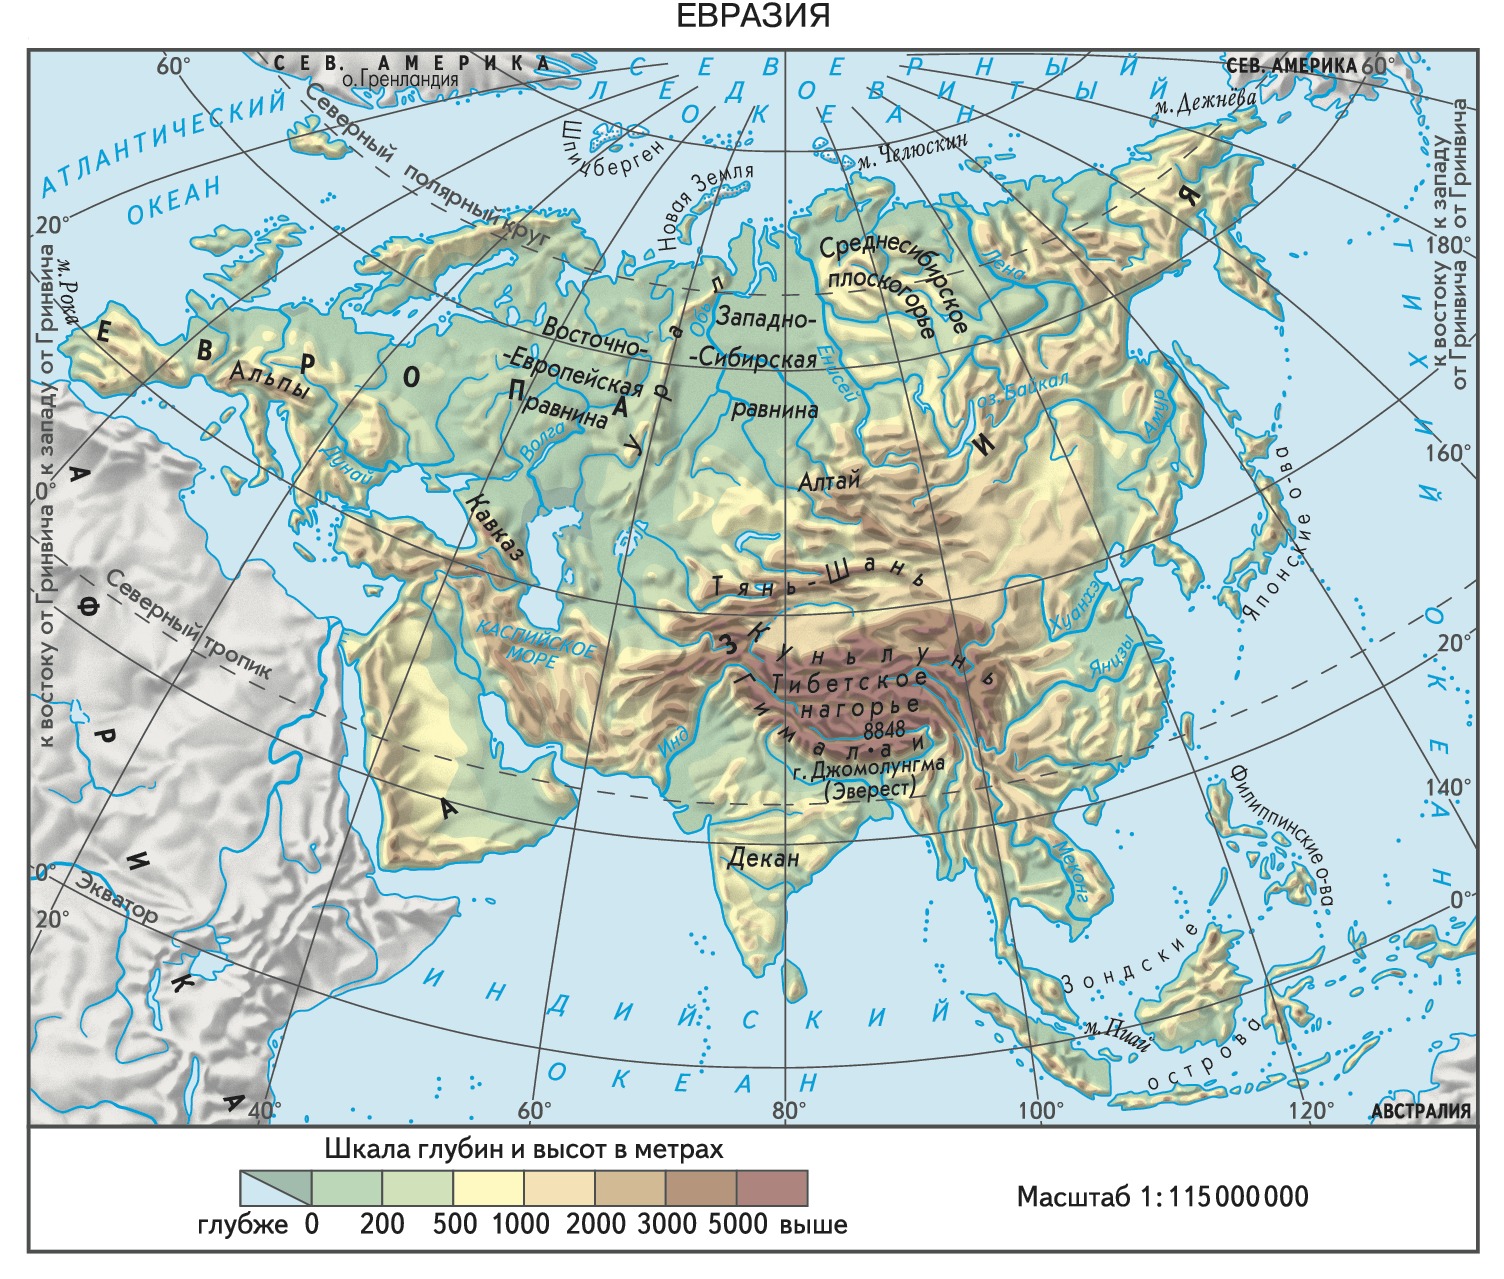 Самое большое море в евразии. Физическая карта Евразии. Материк Евразия физическая карта. Карта Евразийского материка.